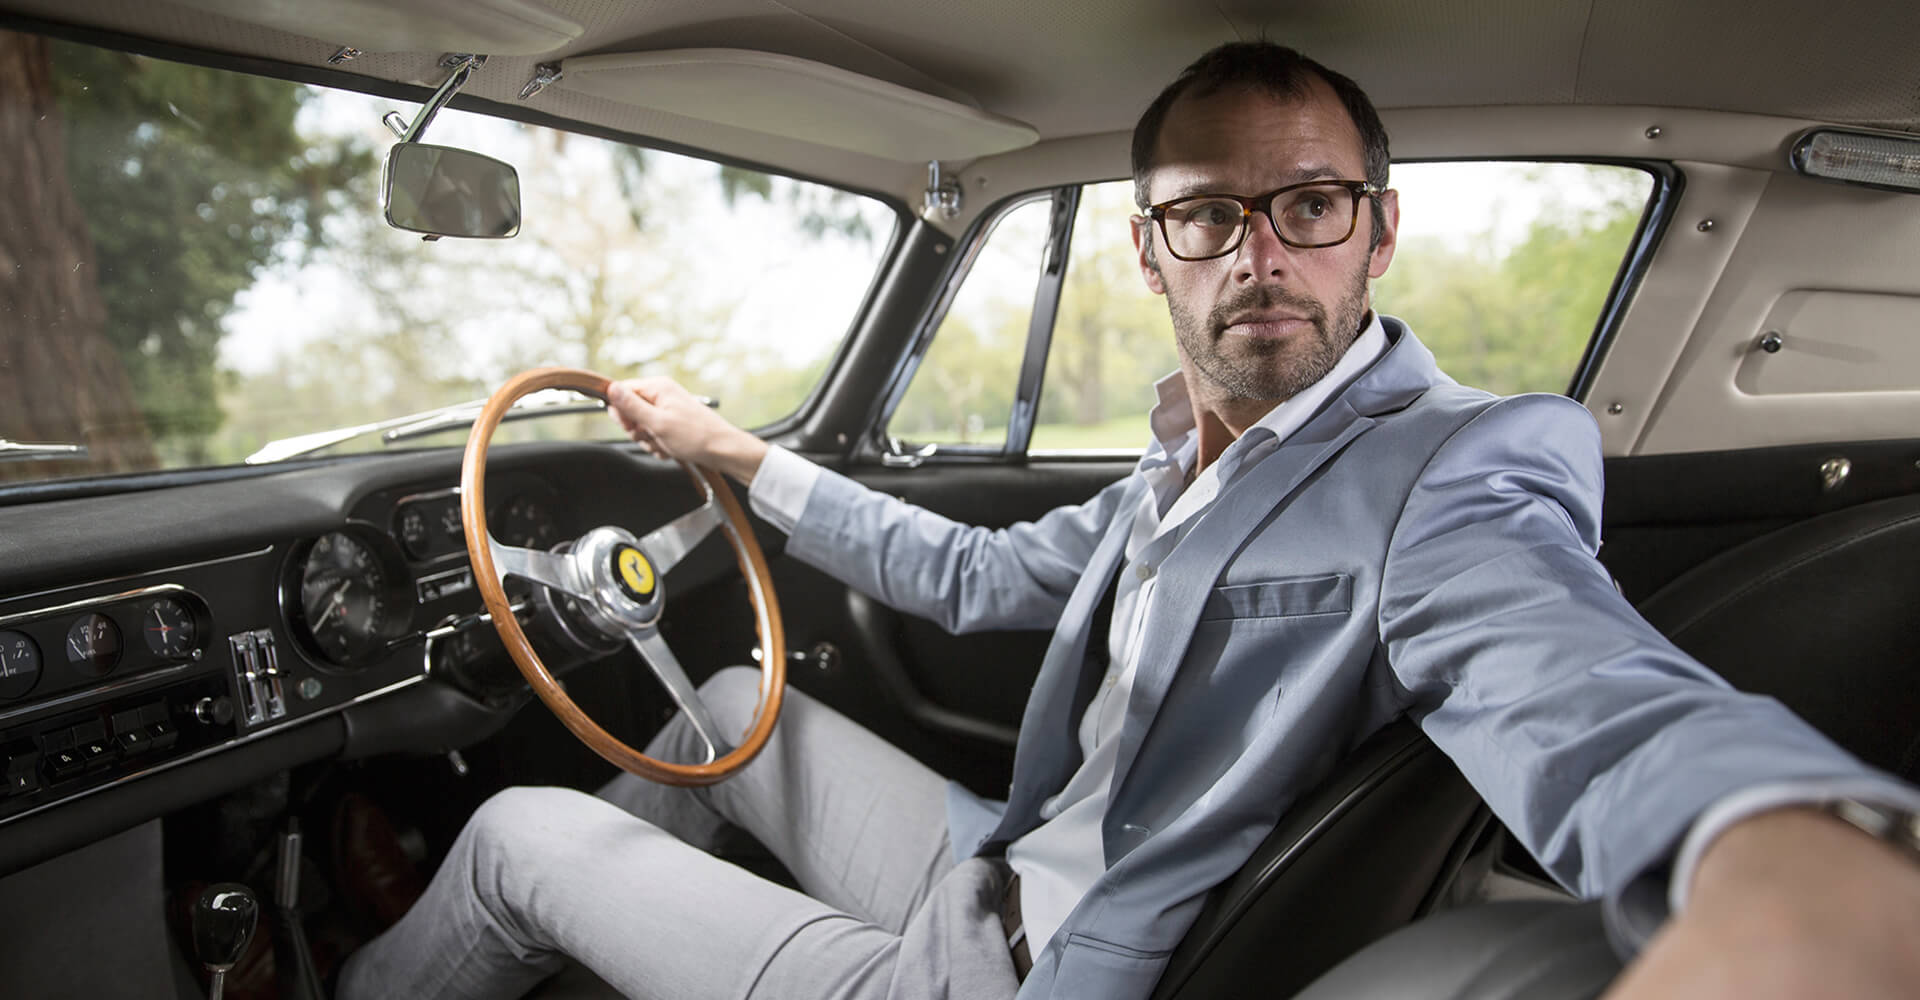 Макс Жирардо, в прошлом успешный аукционер, сегодня владелец собственного брокерского бюро по продаже антикварных автомобилей